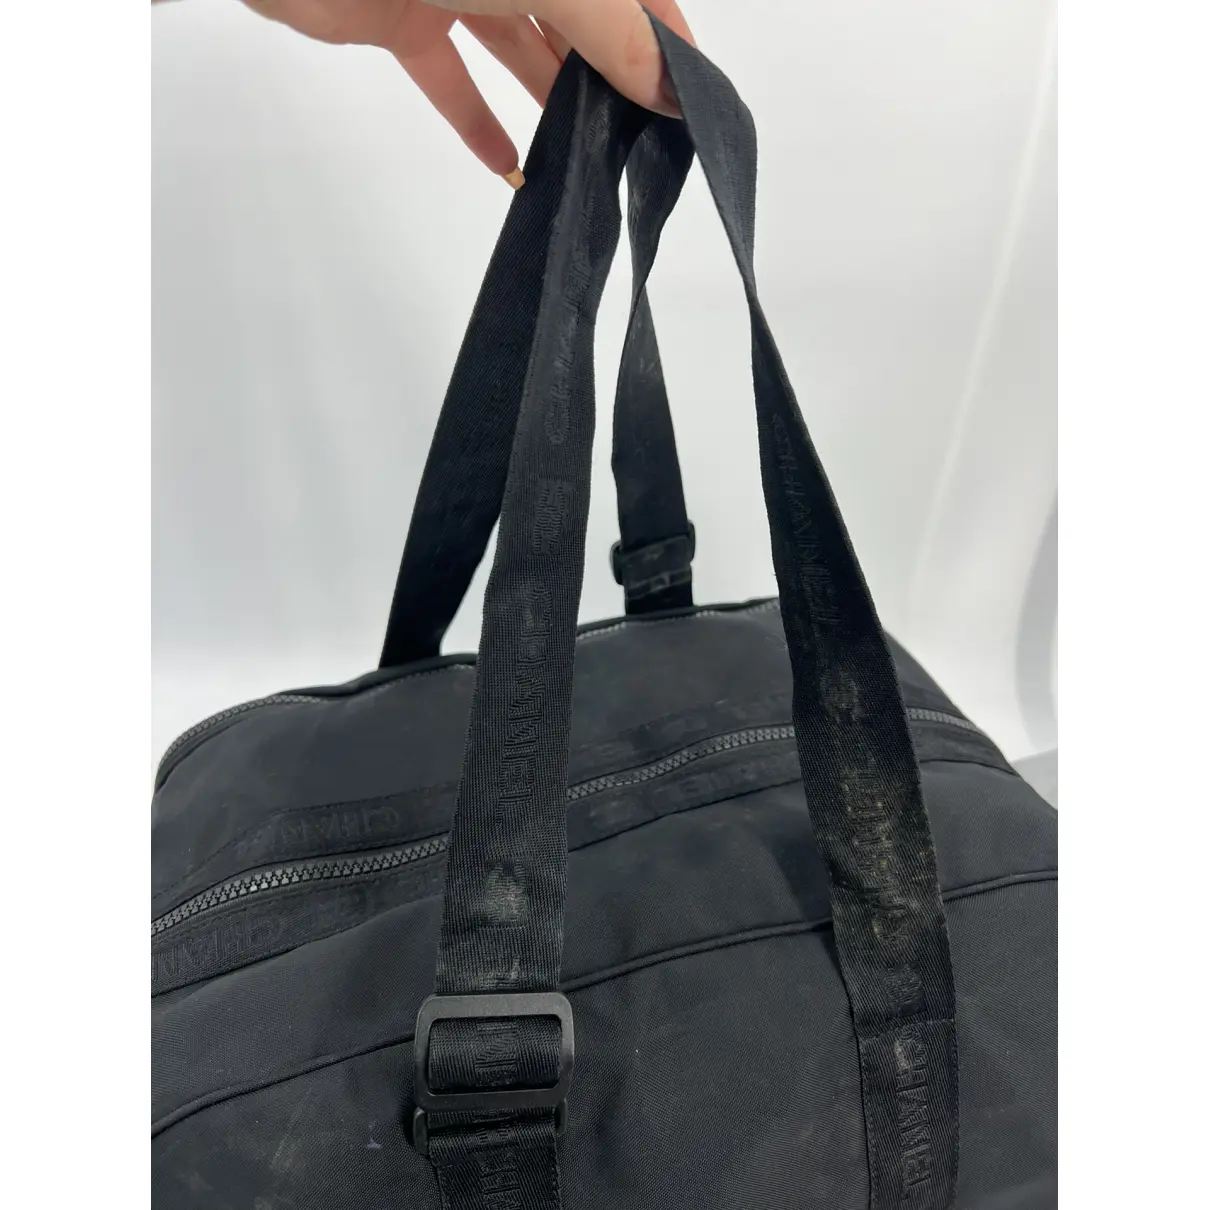 Buy Chanel Cloth travel bag online - Vintage